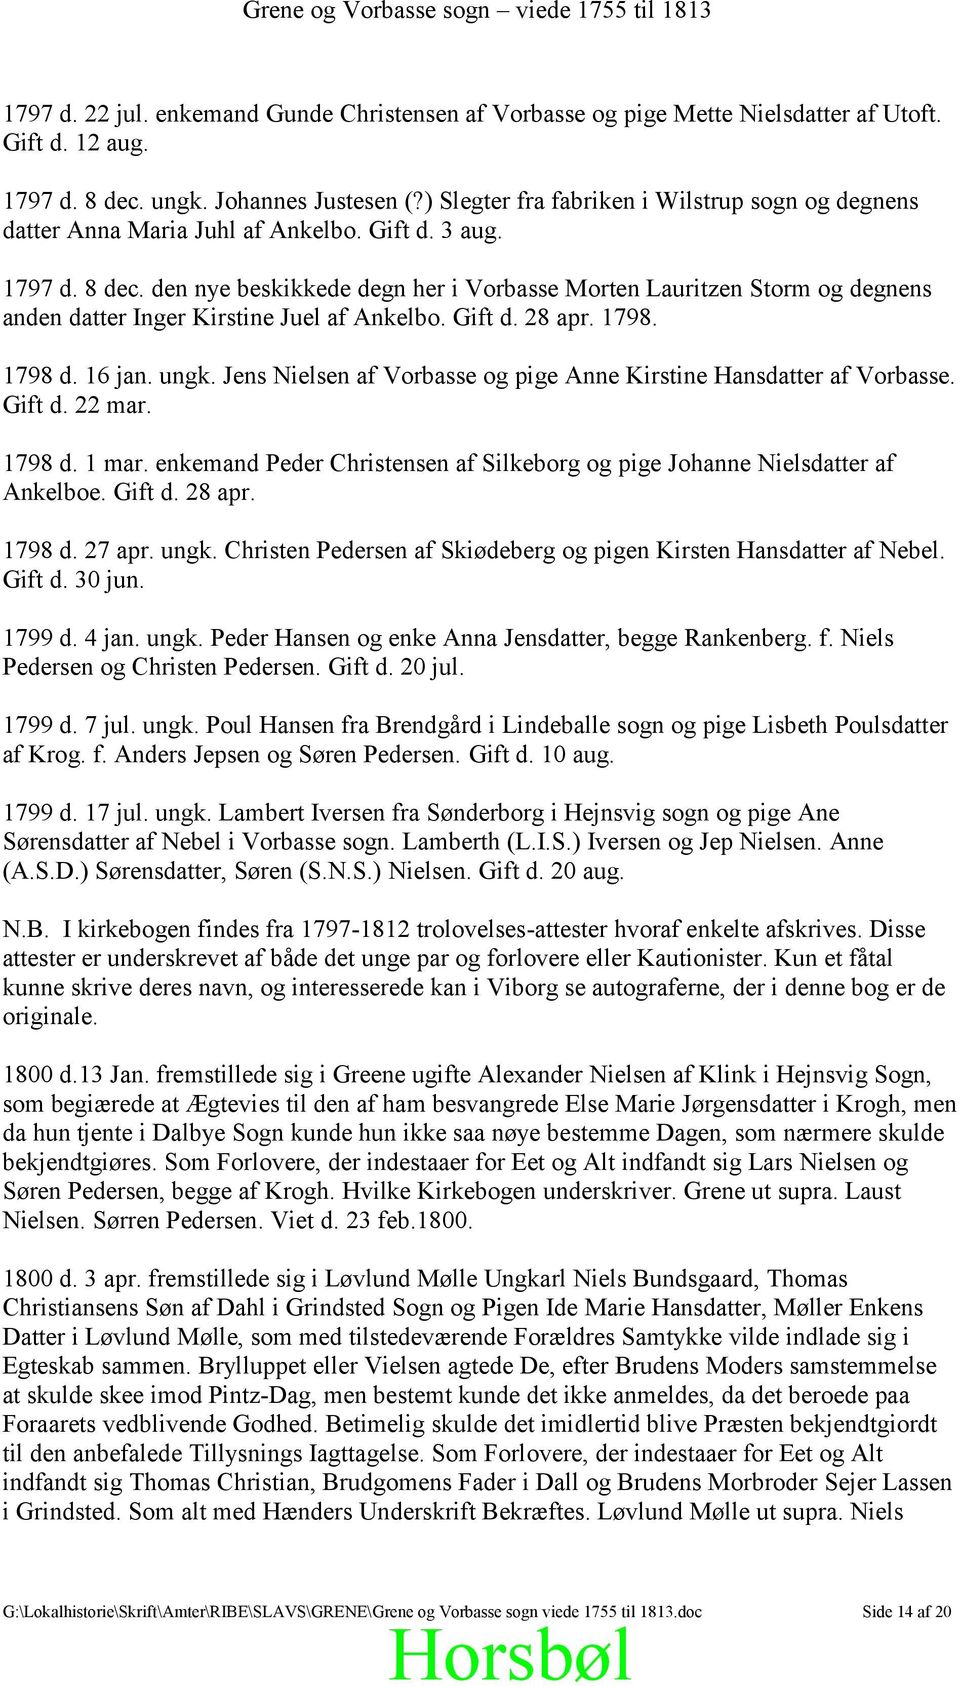 Grene Vorbasse sogn viede 1755 til Afskrift efter kopi af Vorbasse-Grene hovedkirkebog Trolovede og viede. - PDF Gratis download